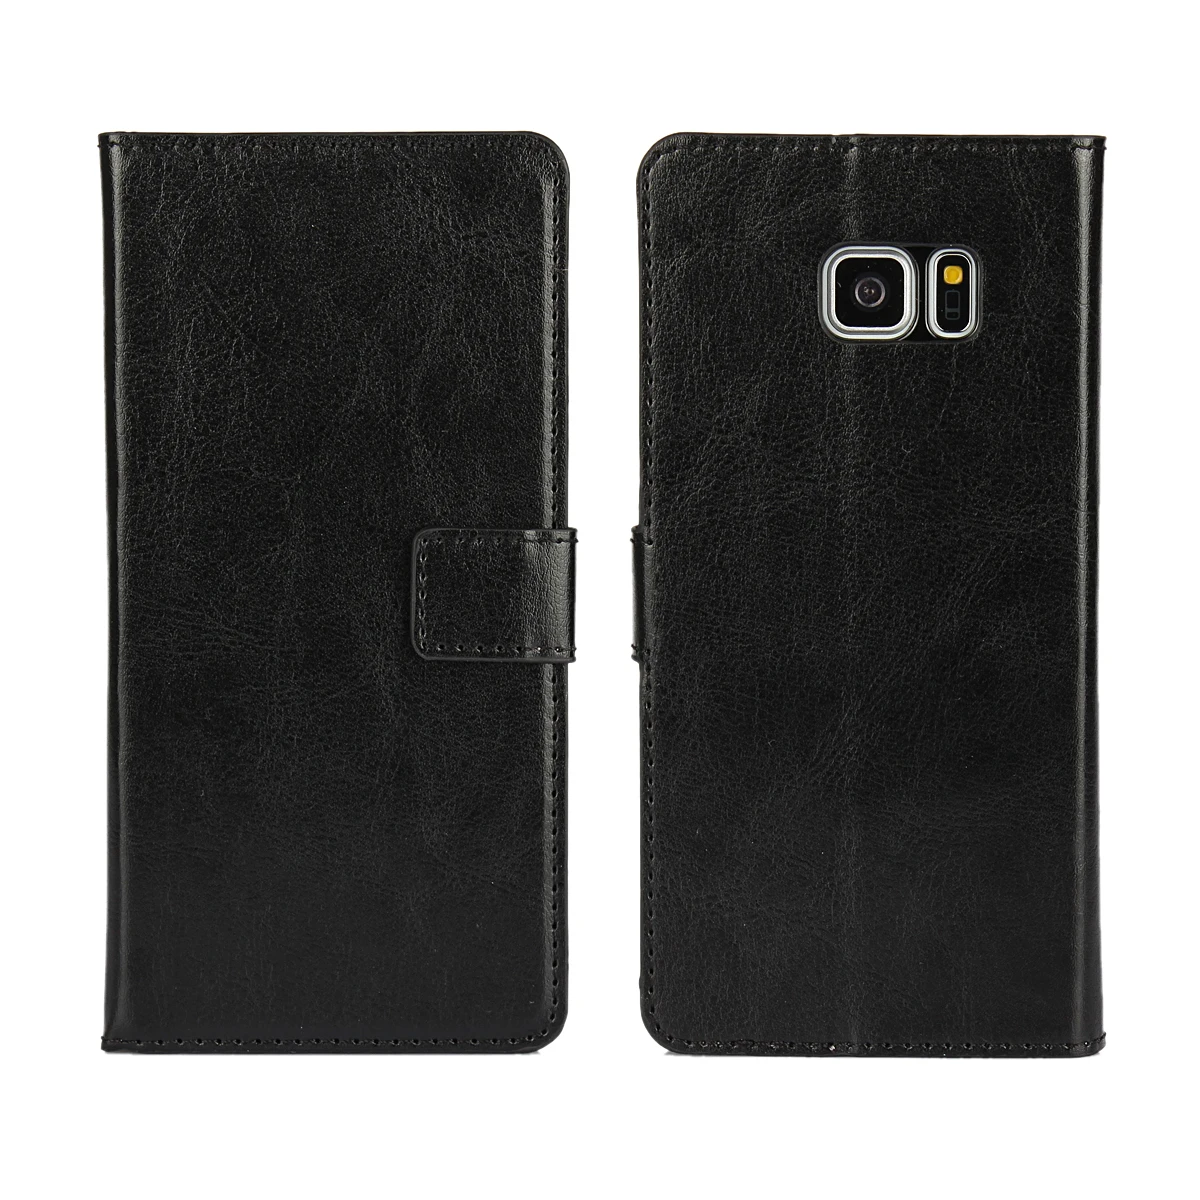 Роскошный кожаный чехол-книжка с отделениями для карт чехол для samsung Galaxy S7 край S6 S5 A3 A5 A7 J5 J7 чехол для Grand Prime чехол для телефона чехол s - Цвет: Black